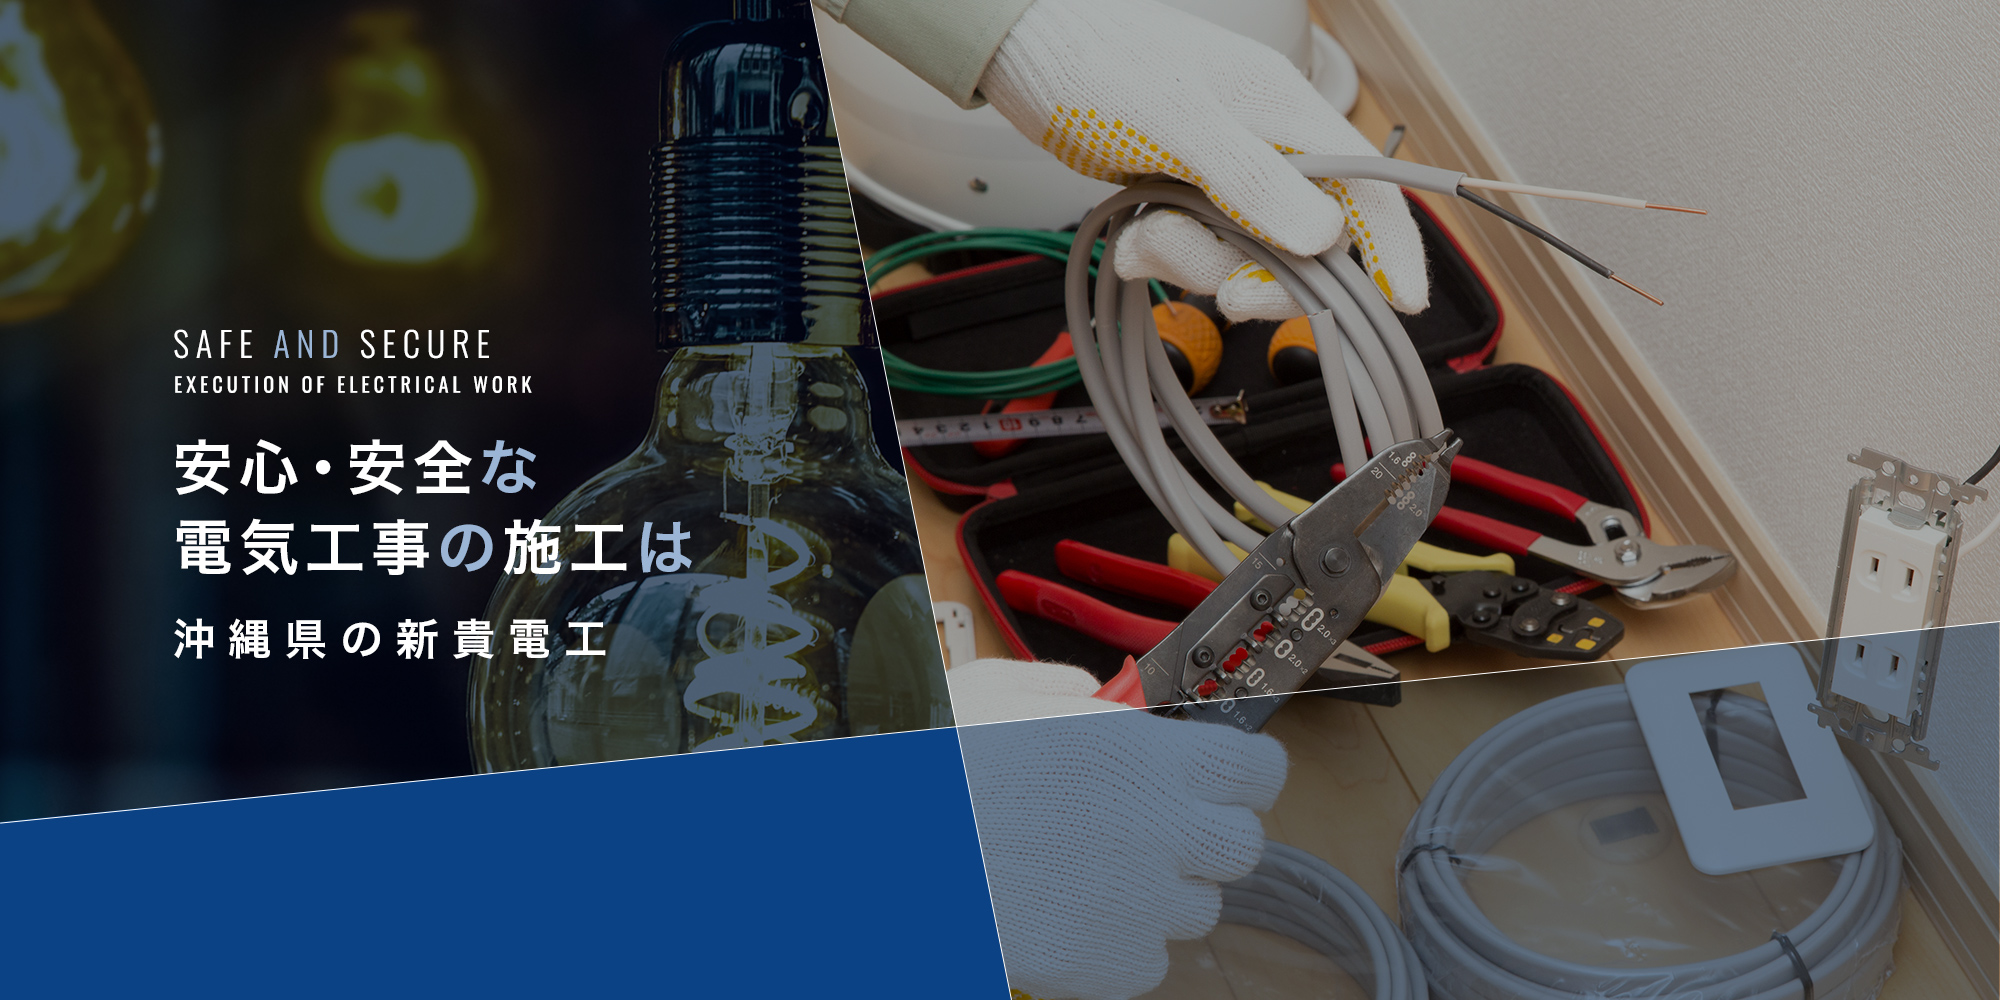 安心・安全な電気工事の施工は、沖縄県の新貴電工